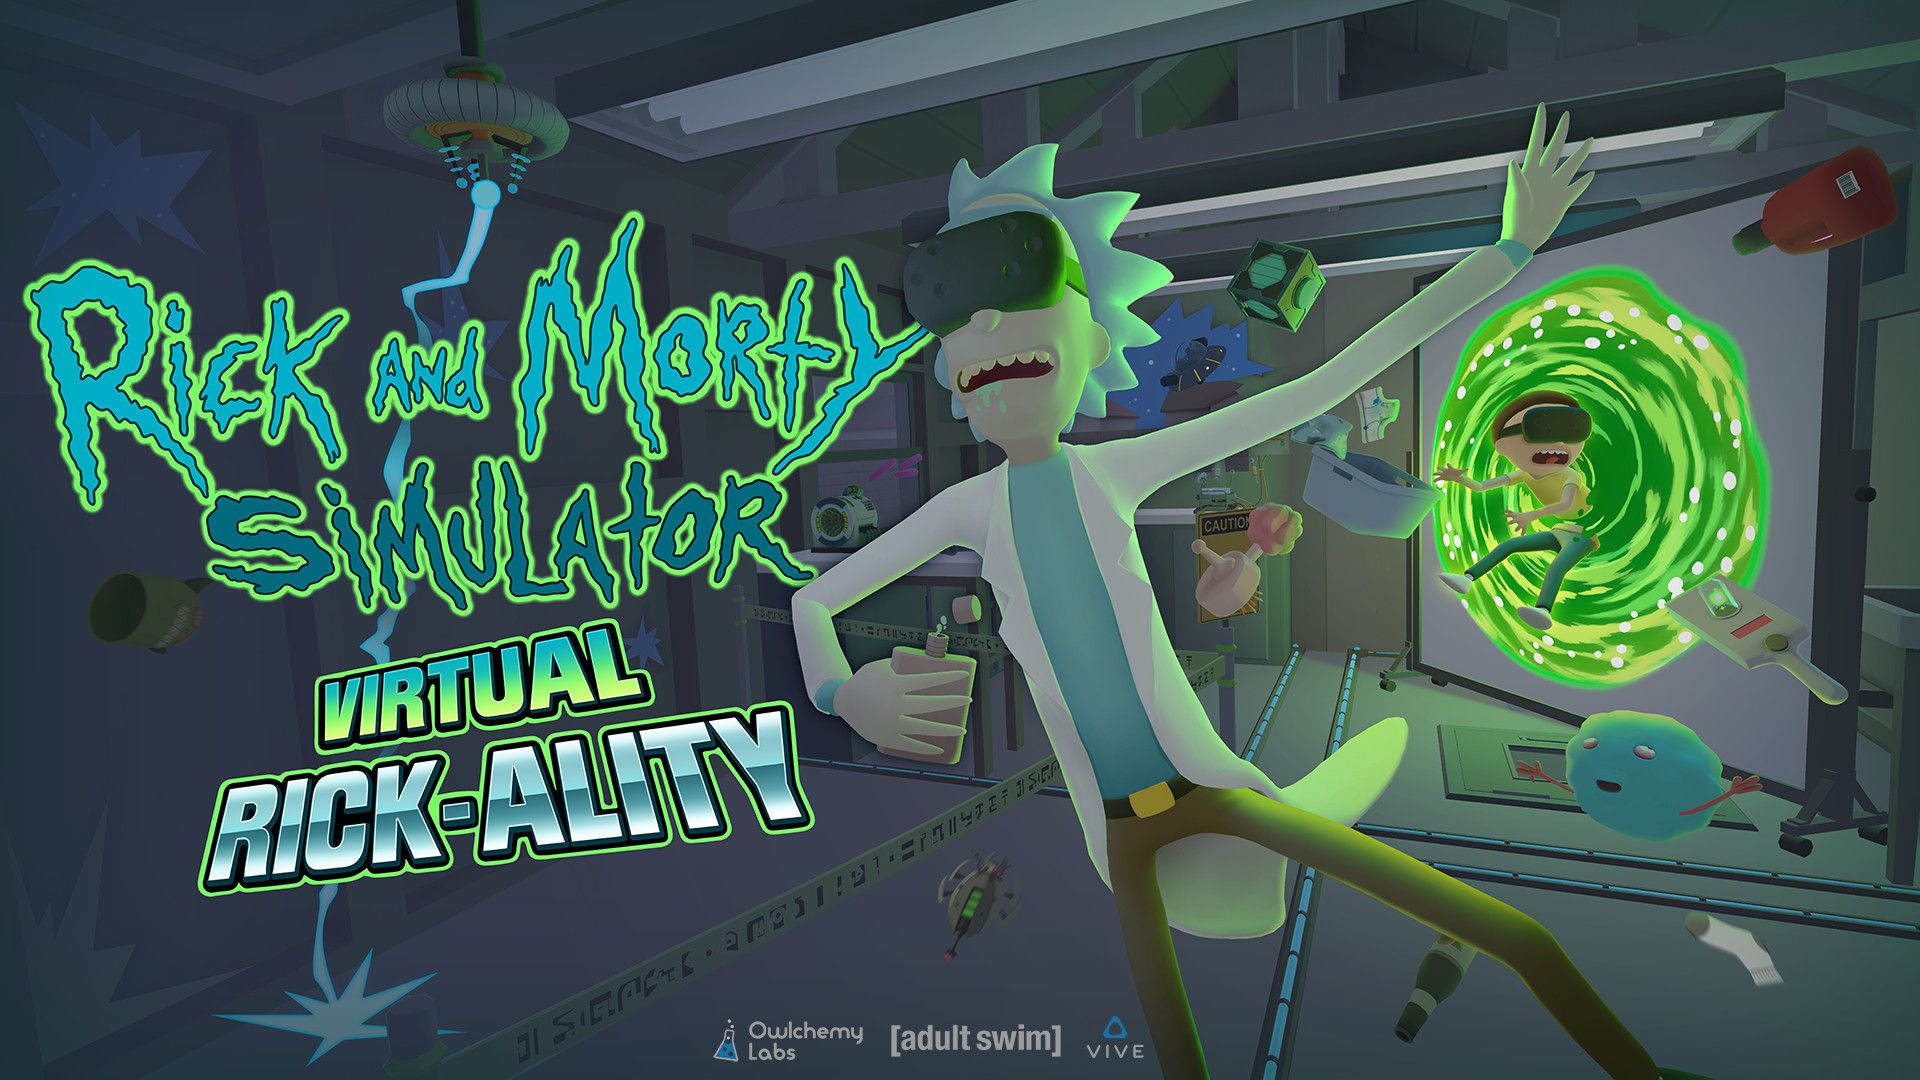 Hilarious Rick and Morty VR Gameuploadvr.com